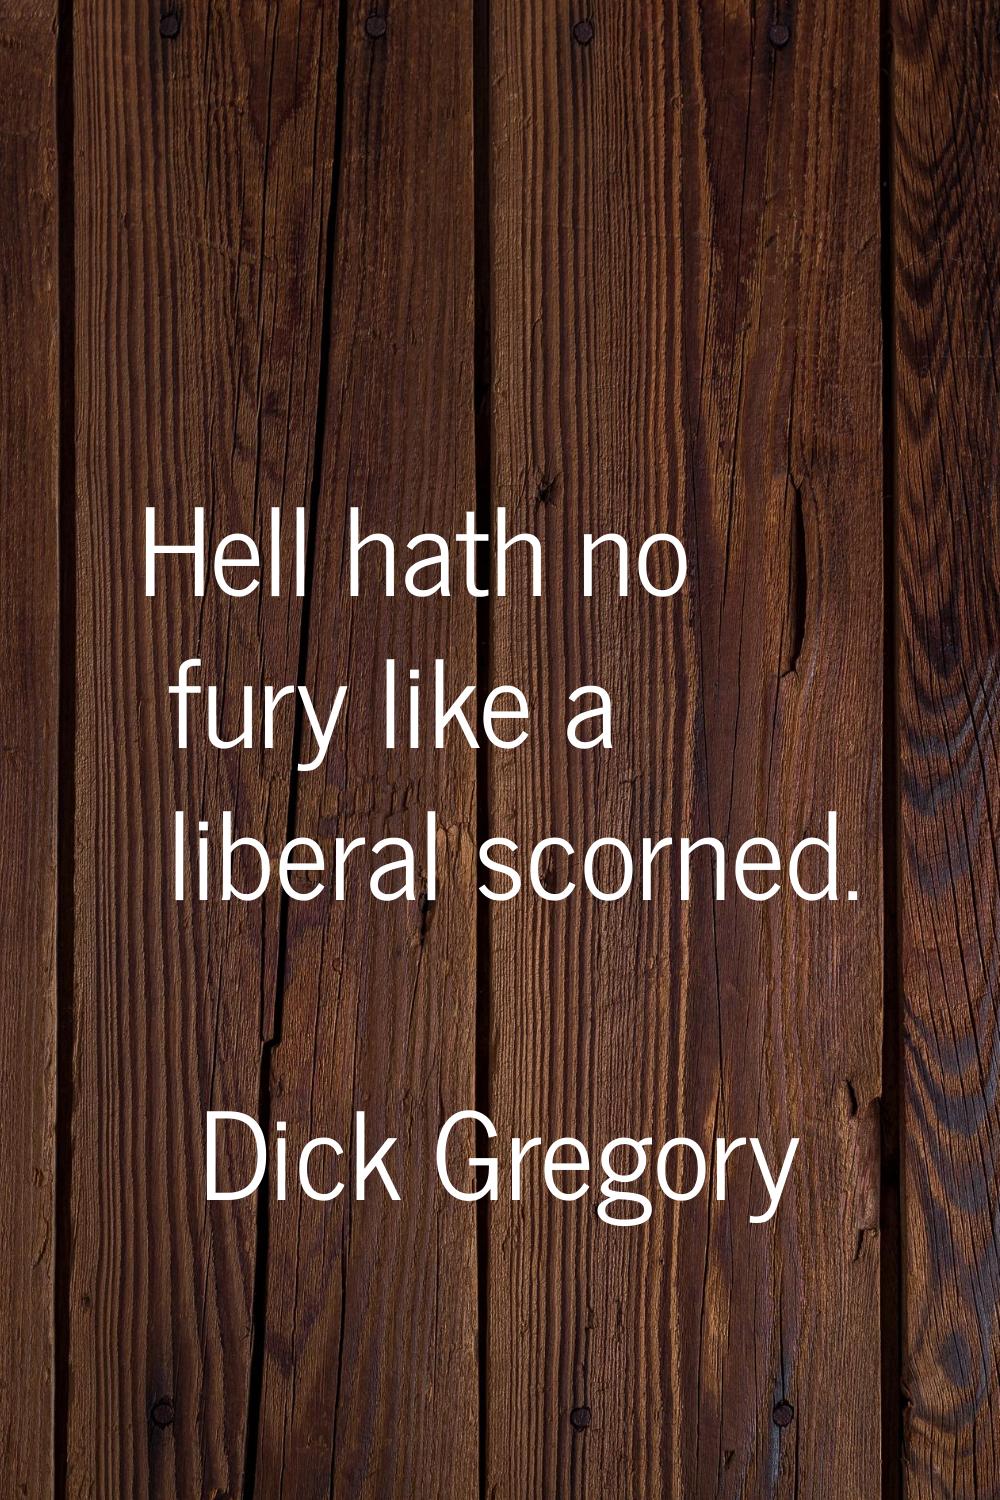 Hell hath no fury like a liberal scorned.